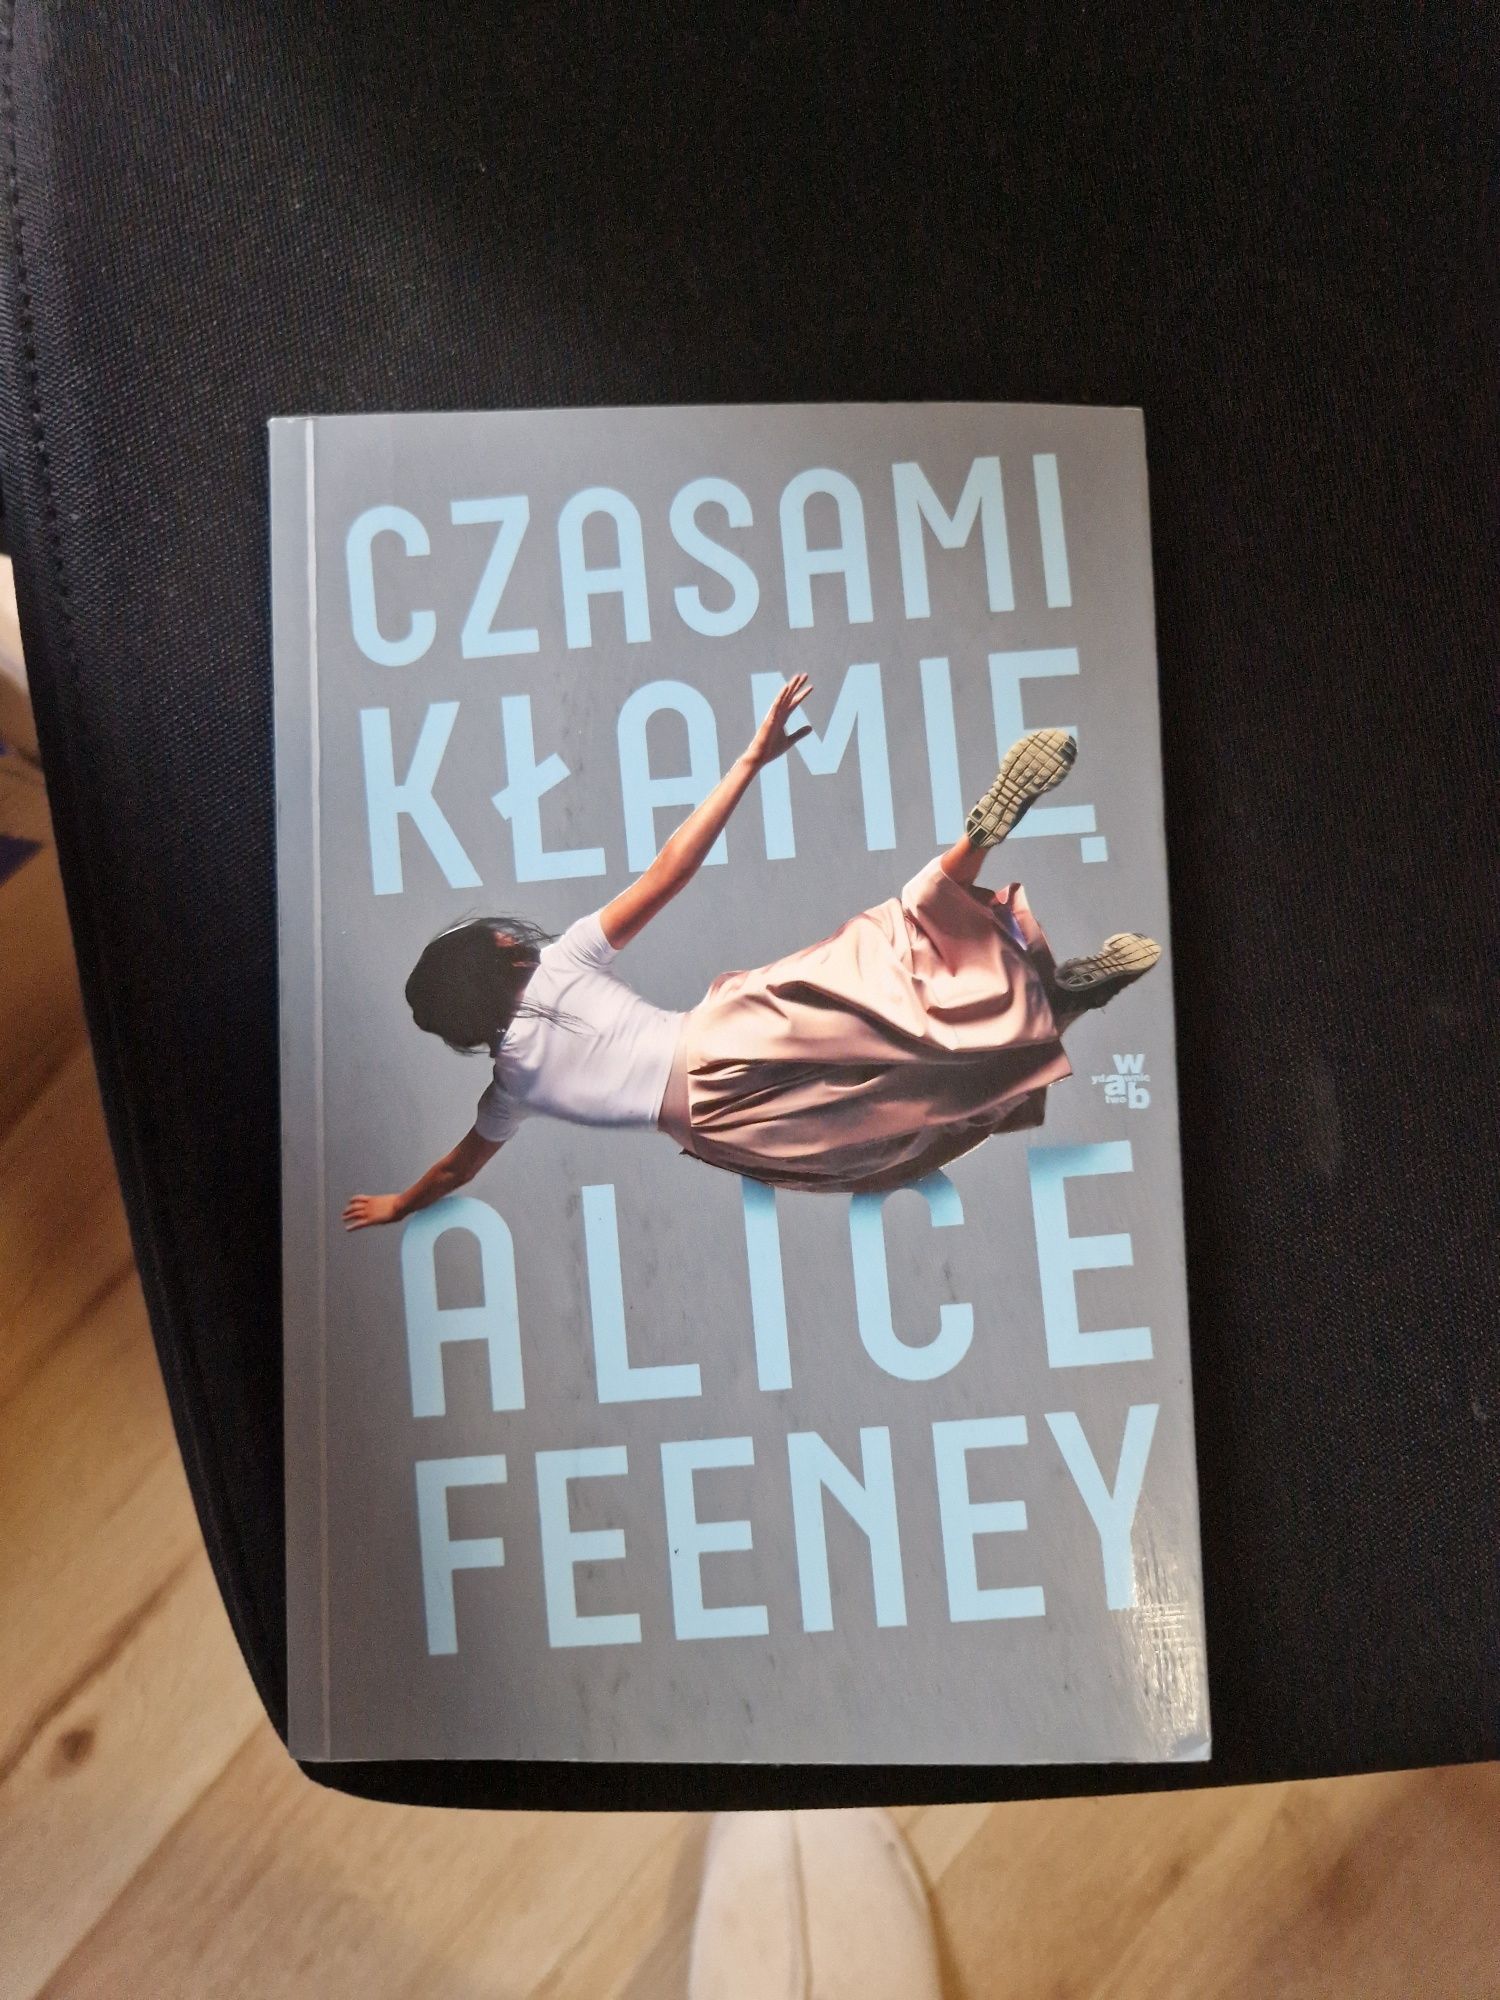 Książka Czasami kłamię Alice Feeney